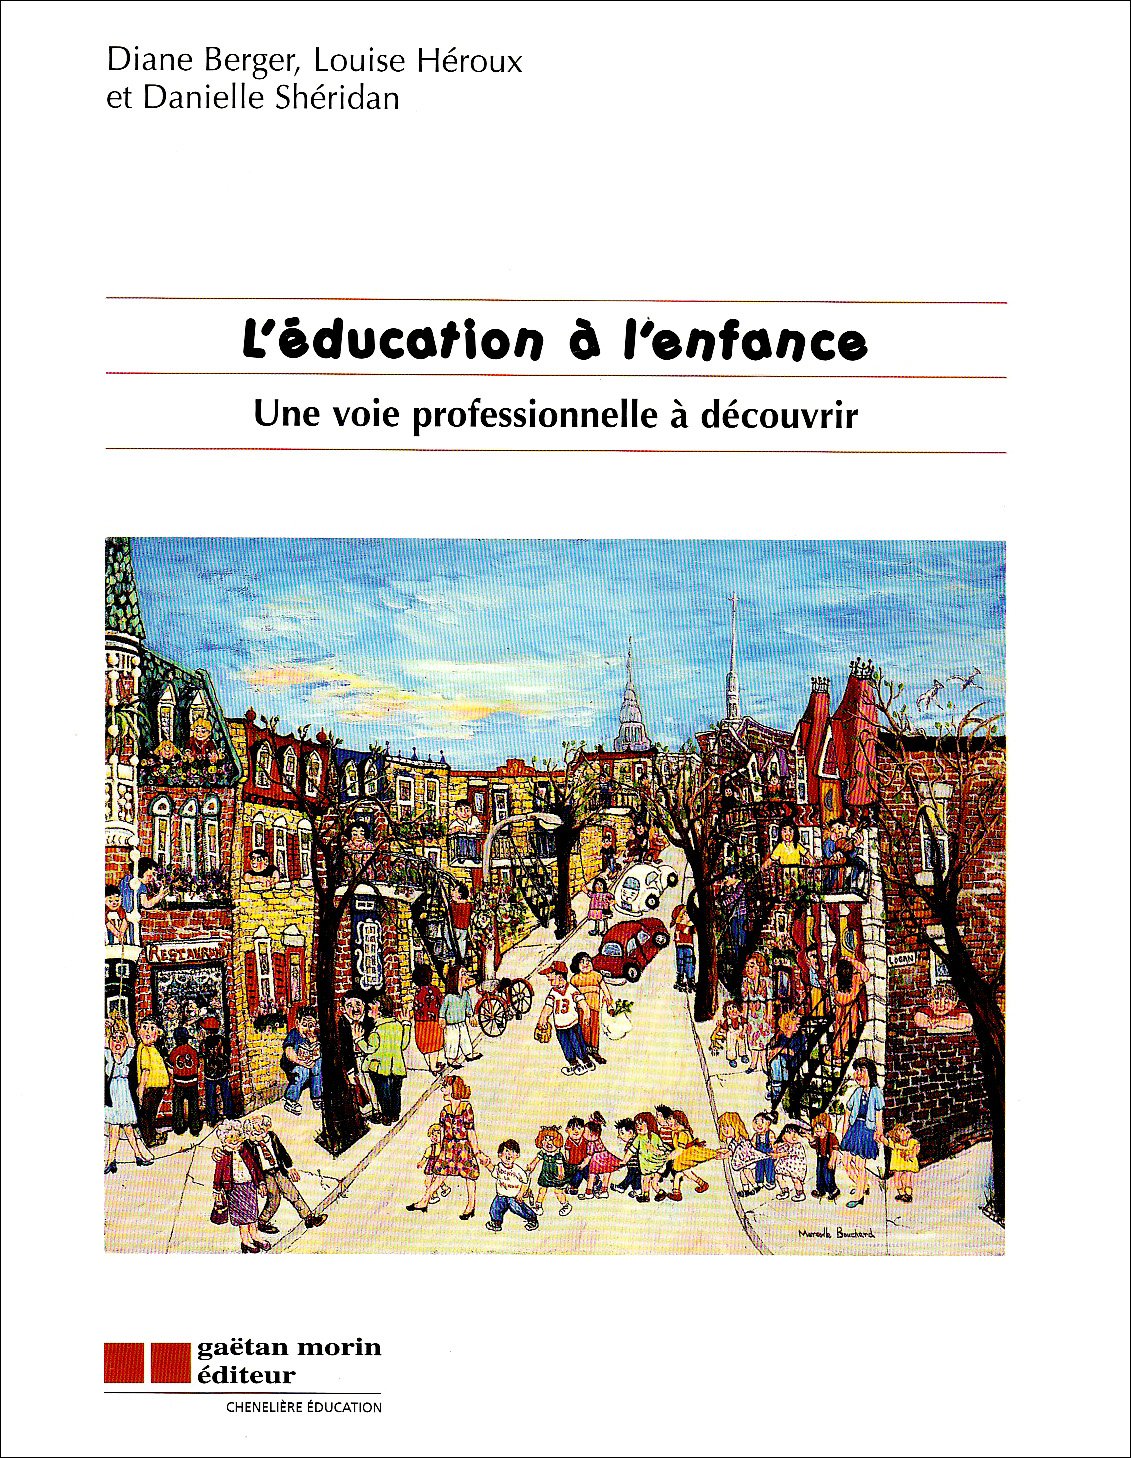 Livre ISBN 2891059131 L'éducation à l'enfance : Une voie professionnelle à découvrir (Diane Berge)